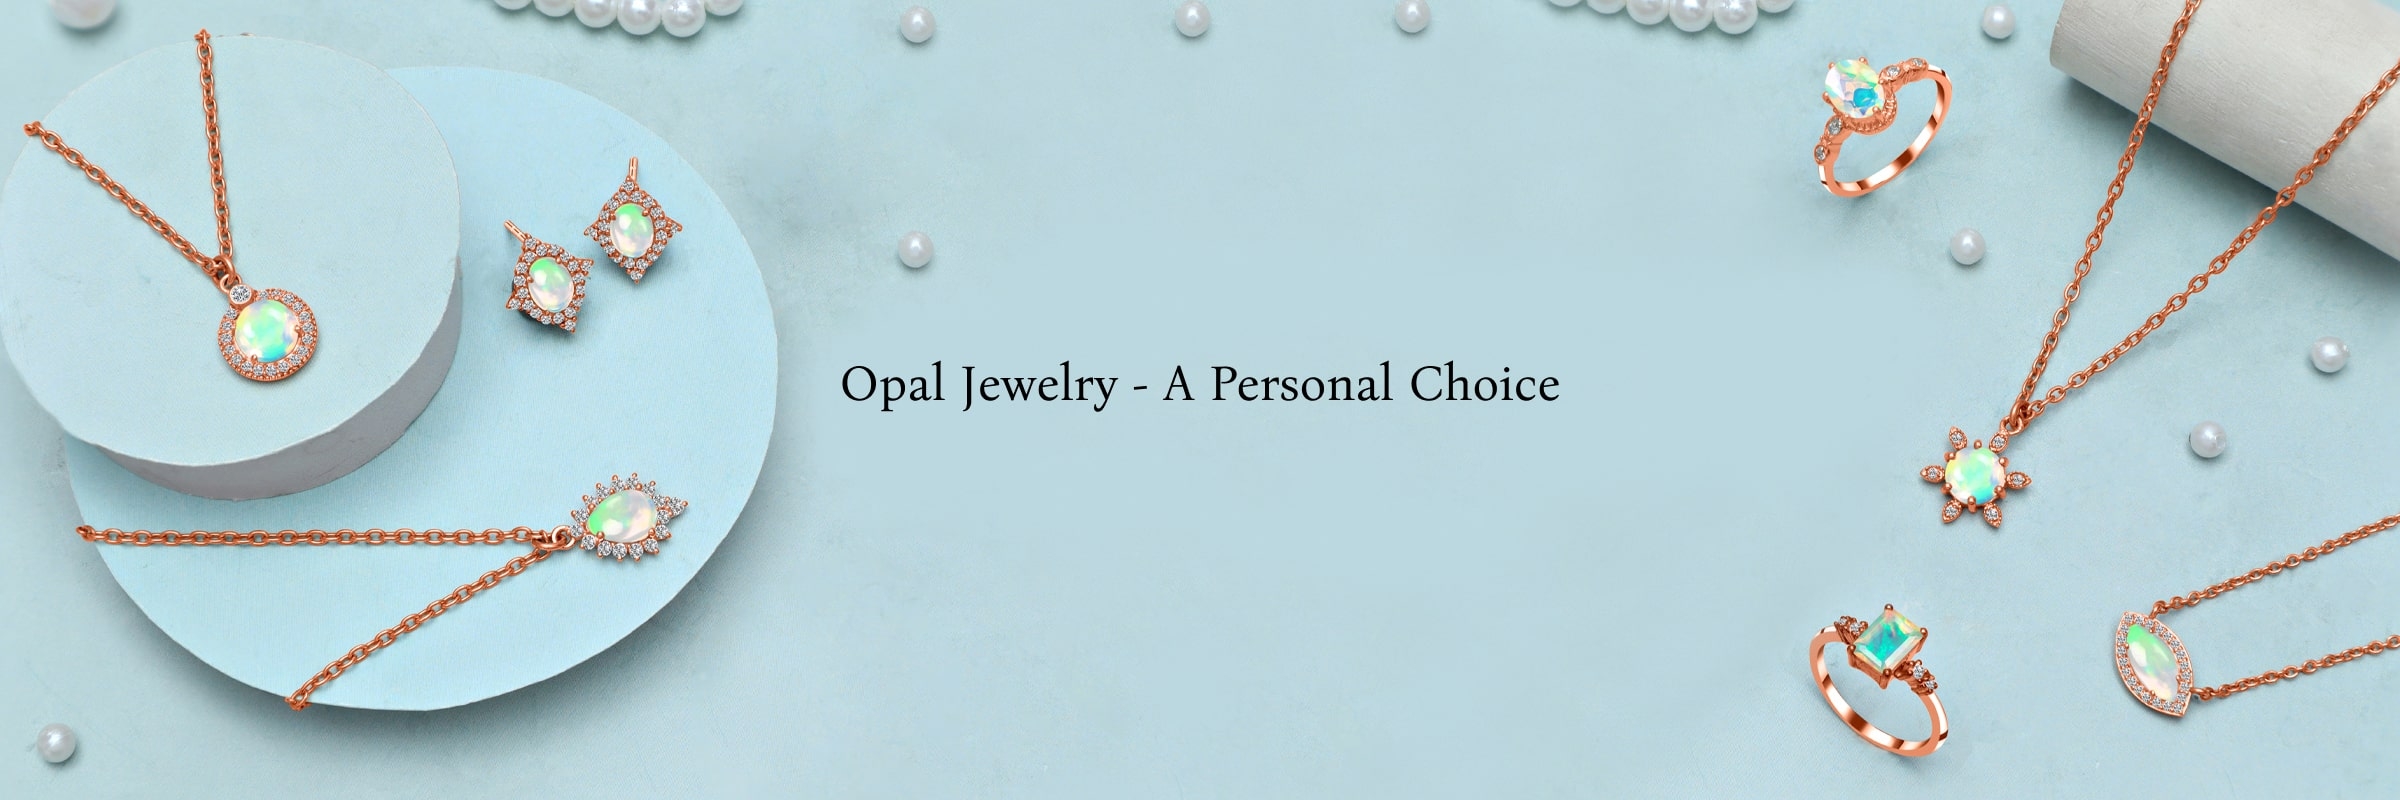 Who Should Wear an Opal